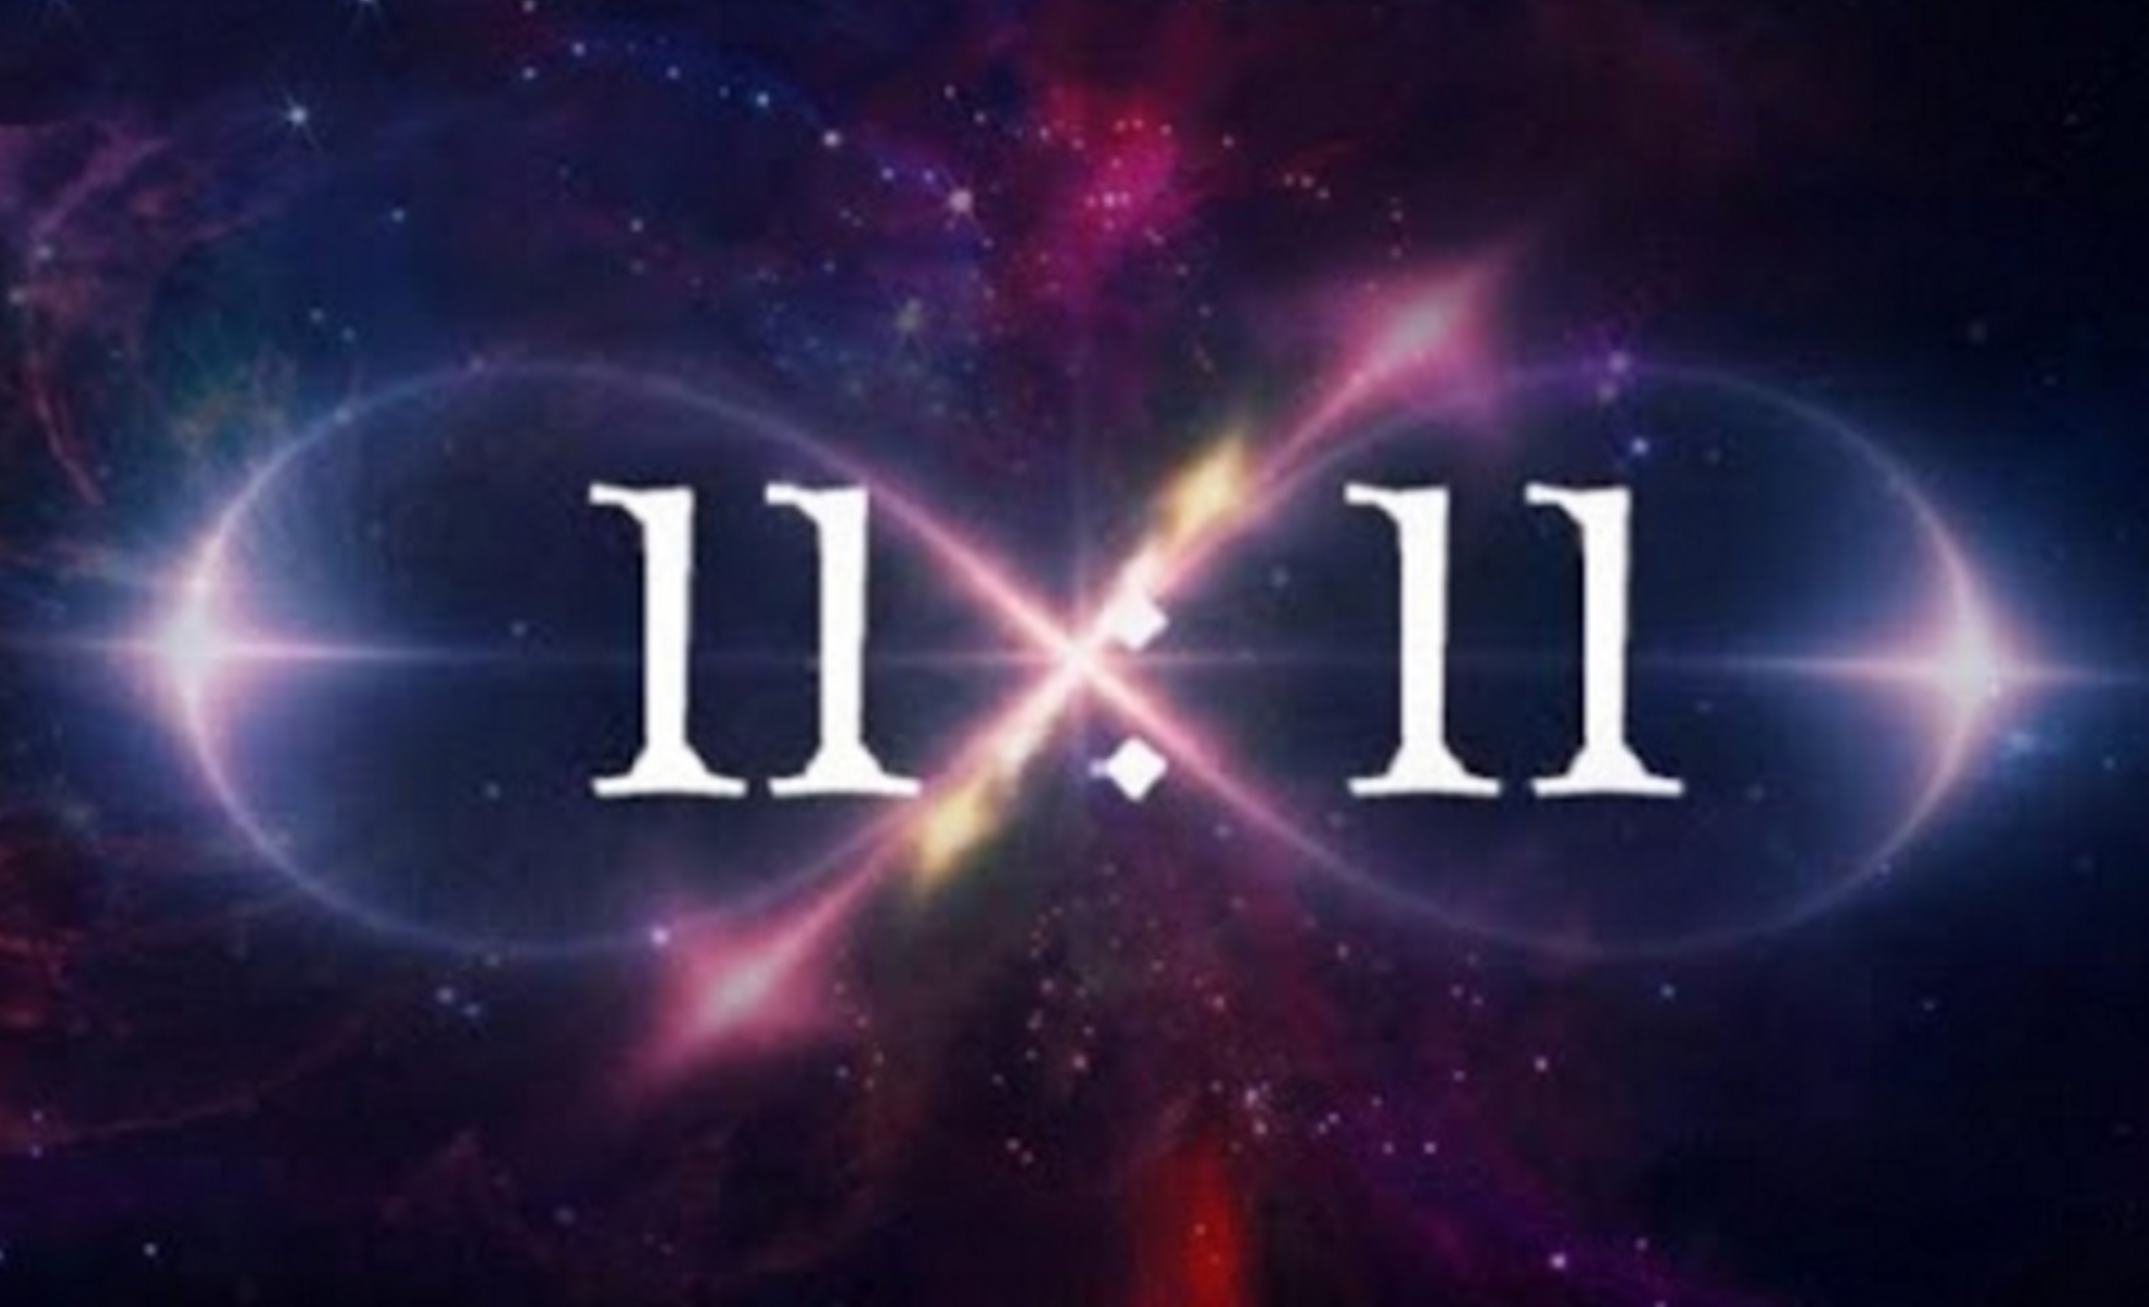 11 11 пробуждение. Магия числа 11. 11:11 Нумерология. 11.11 Картинки. 11 11 Магия чисел.